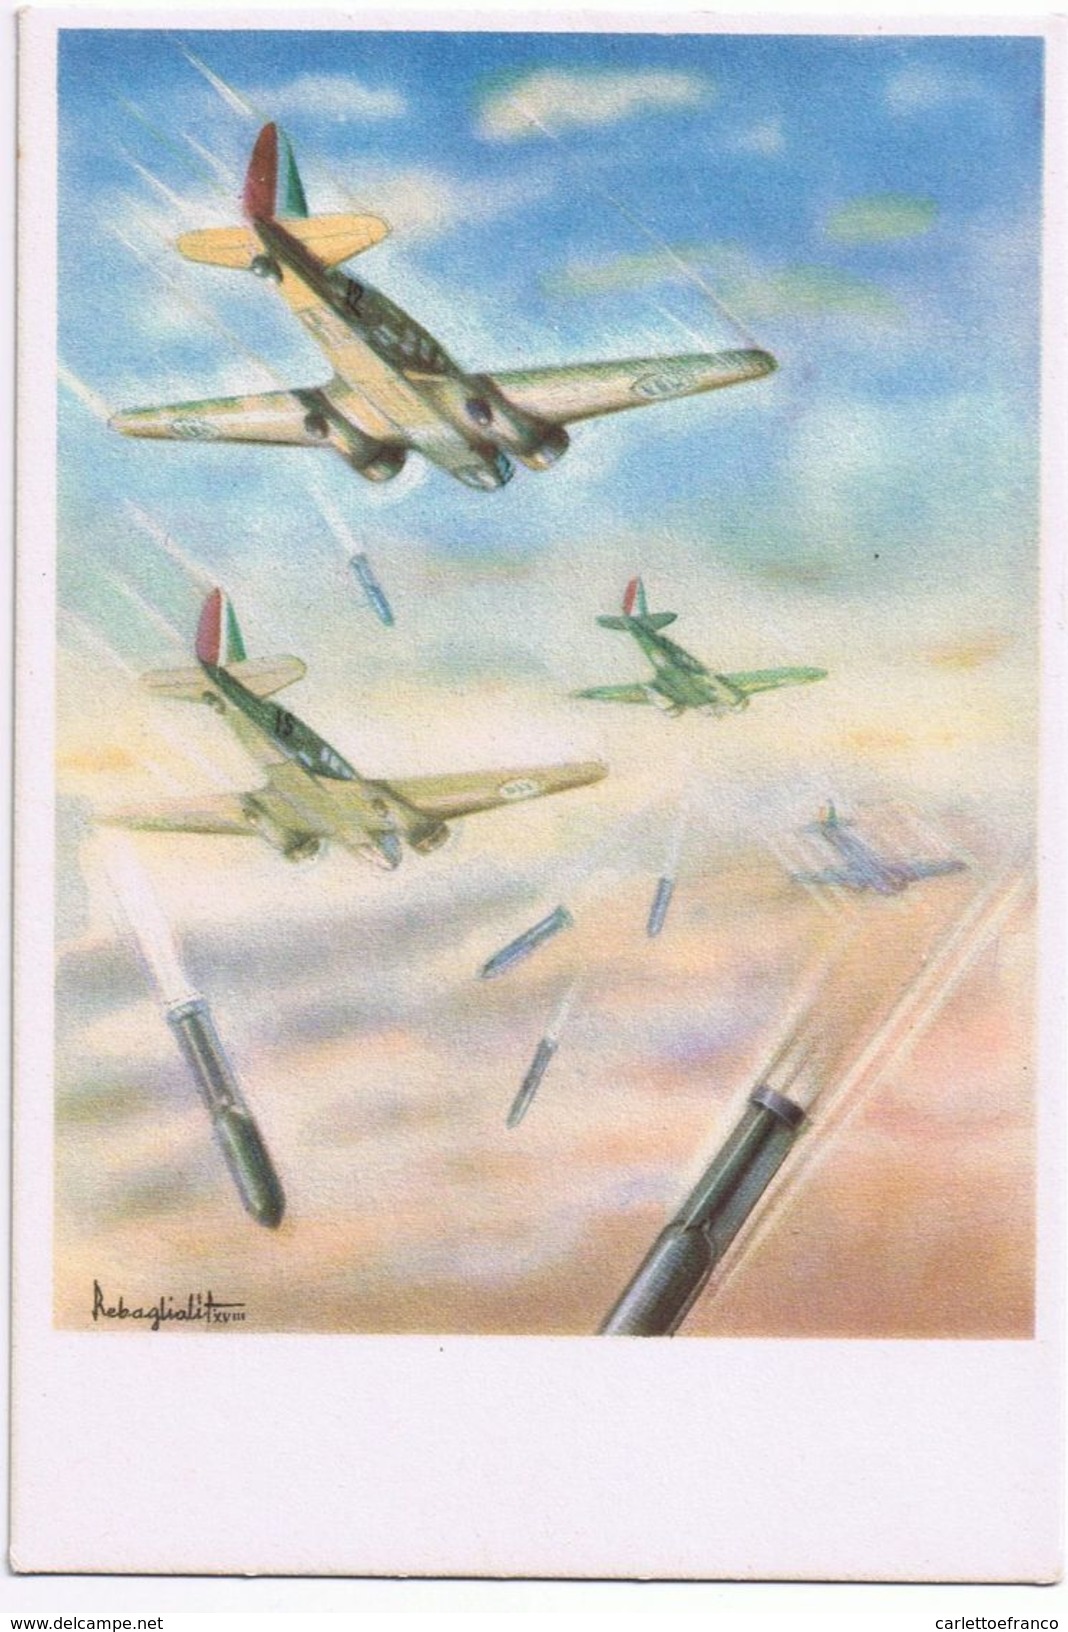 Caproni  - Non Viaggiata - Illustratore Rebagliati - 1939-1945: 2a Guerra